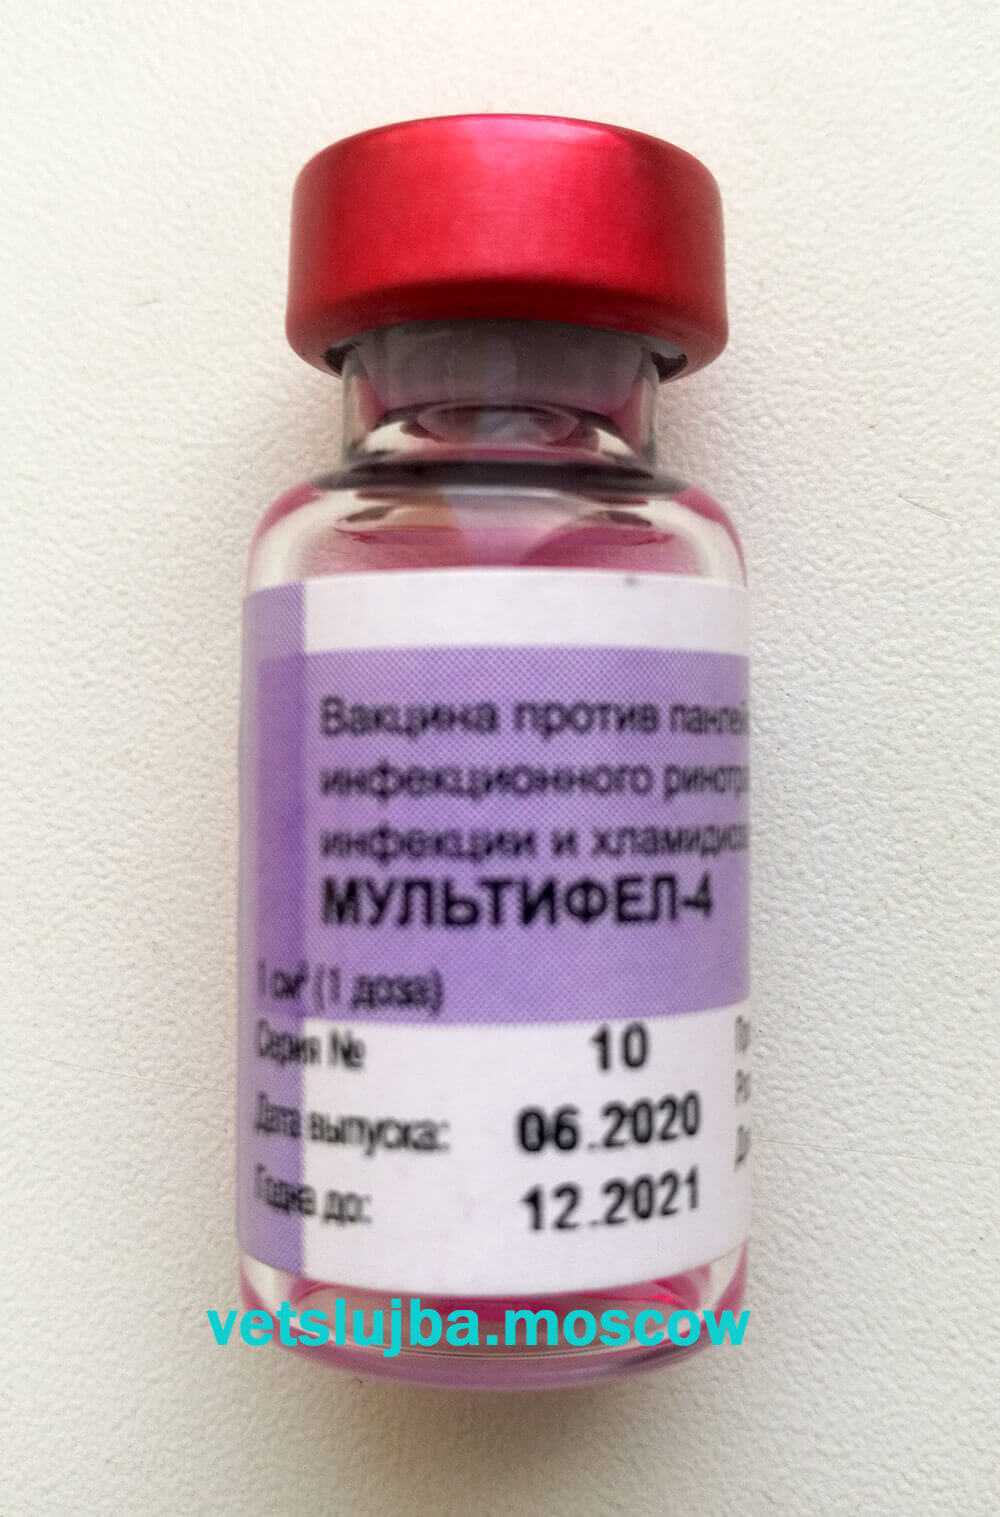 Вакцина мультифел-4 инструкция для кошек, состав, описание и отзывы – 1st-finstep.ru